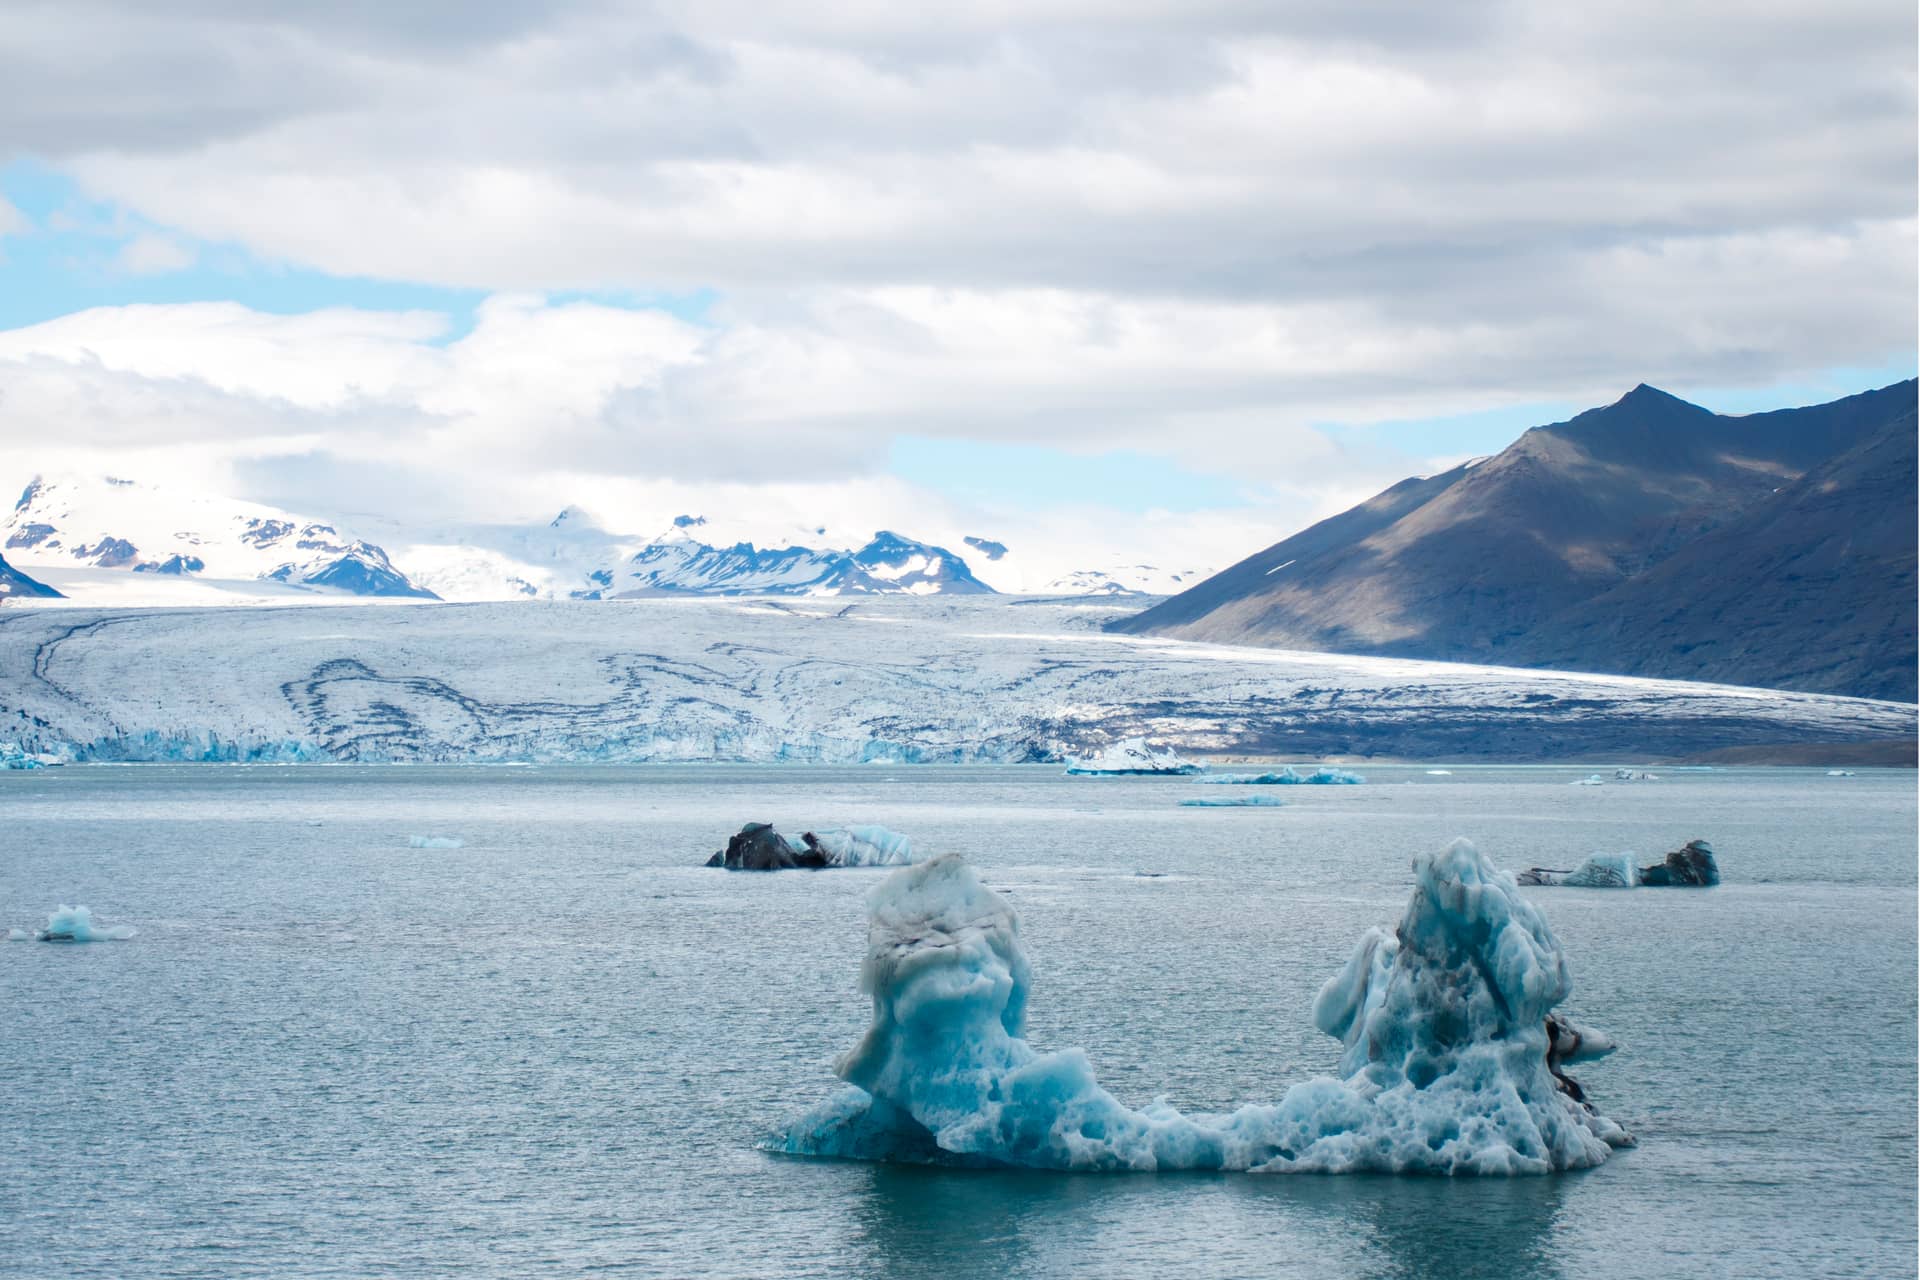 Die Jökulsárlón Lagune entsteht auf natürlichem Weg aus dem Wasser, das vom Vatnajökull Gletscher abschmilzt